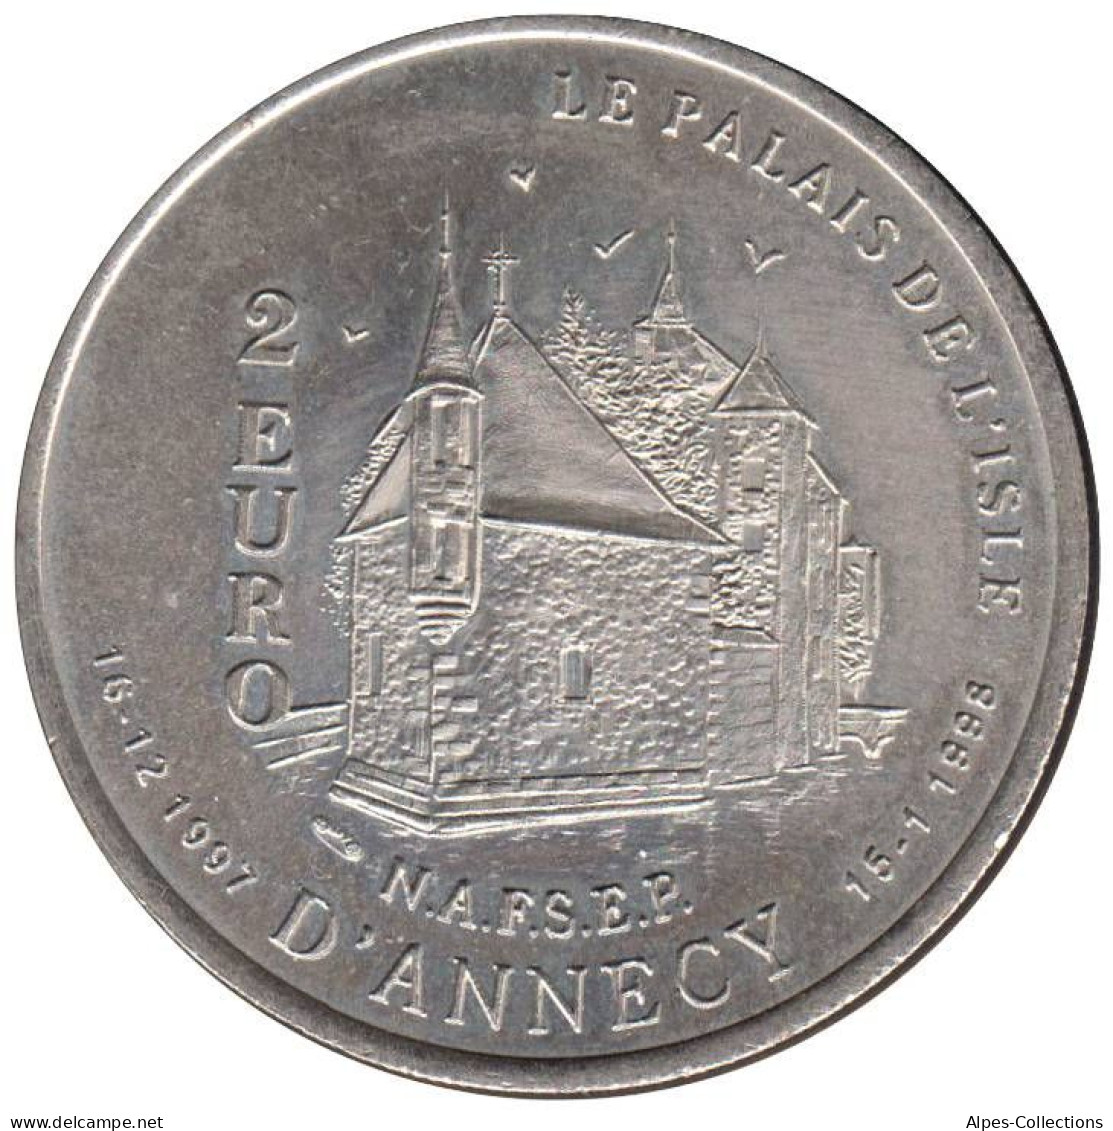 ANNECY - EU0020.1 - 2 EURO DES VILLES - Réf: T234 - 1997 - Euros Des Villes